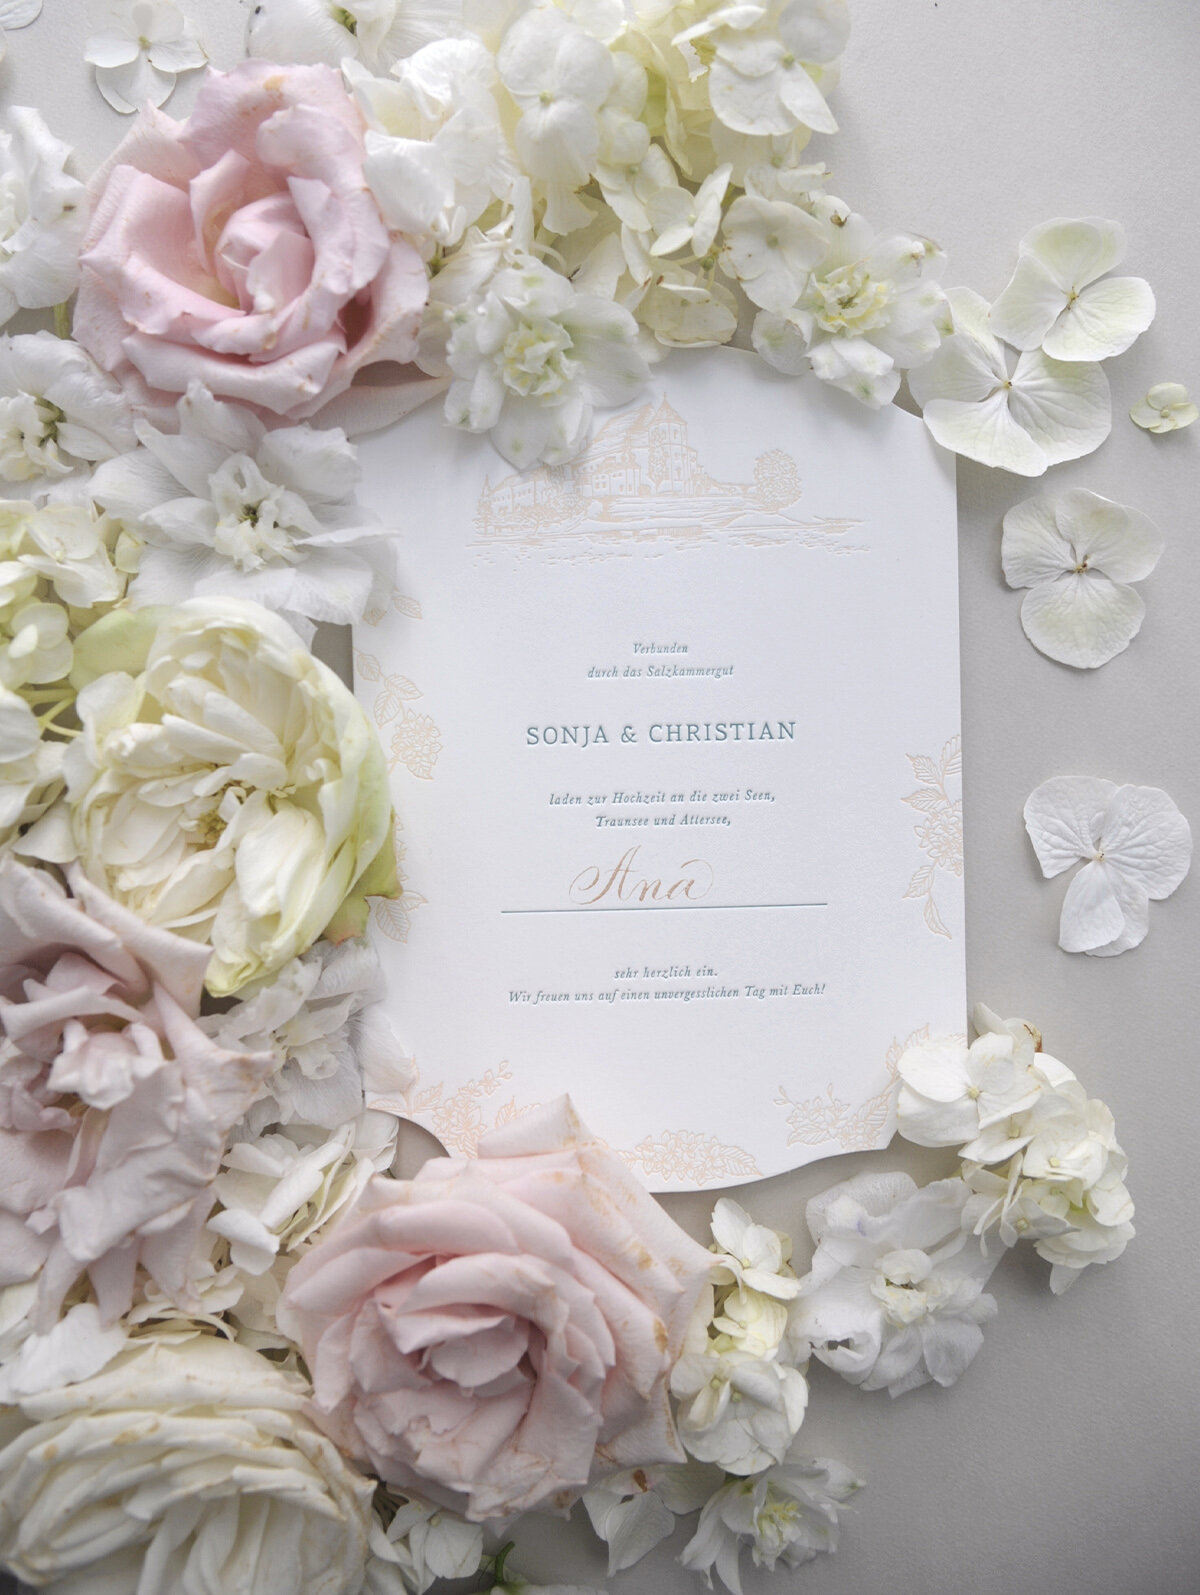 Maßgefertigte floreale Hochzeitspapeterie von Carissimo Letterpress mit gestanzter Einladung